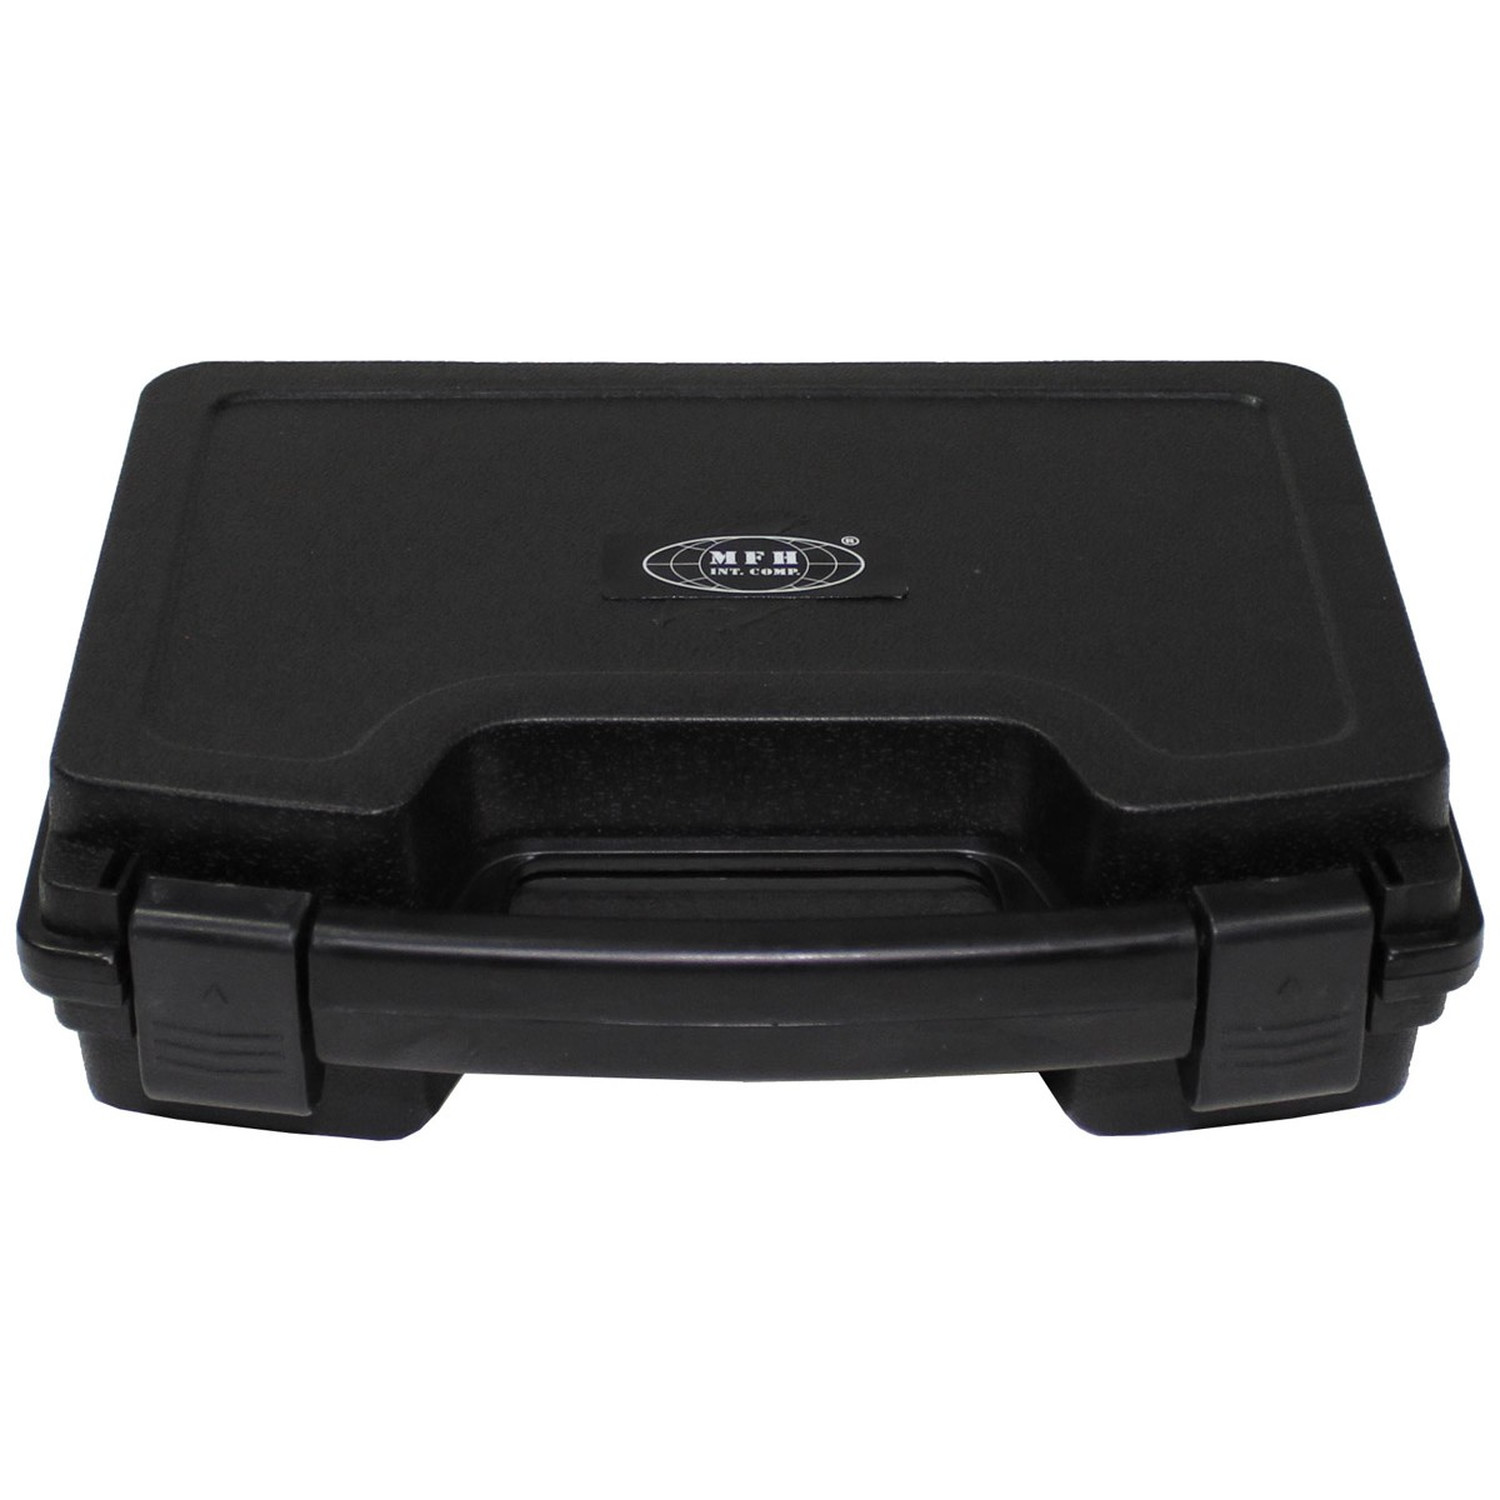 Kunststoff Koffer, abschließbar und gepolstert - Klein 26,5 x 21 x 8 cm, Schwarz